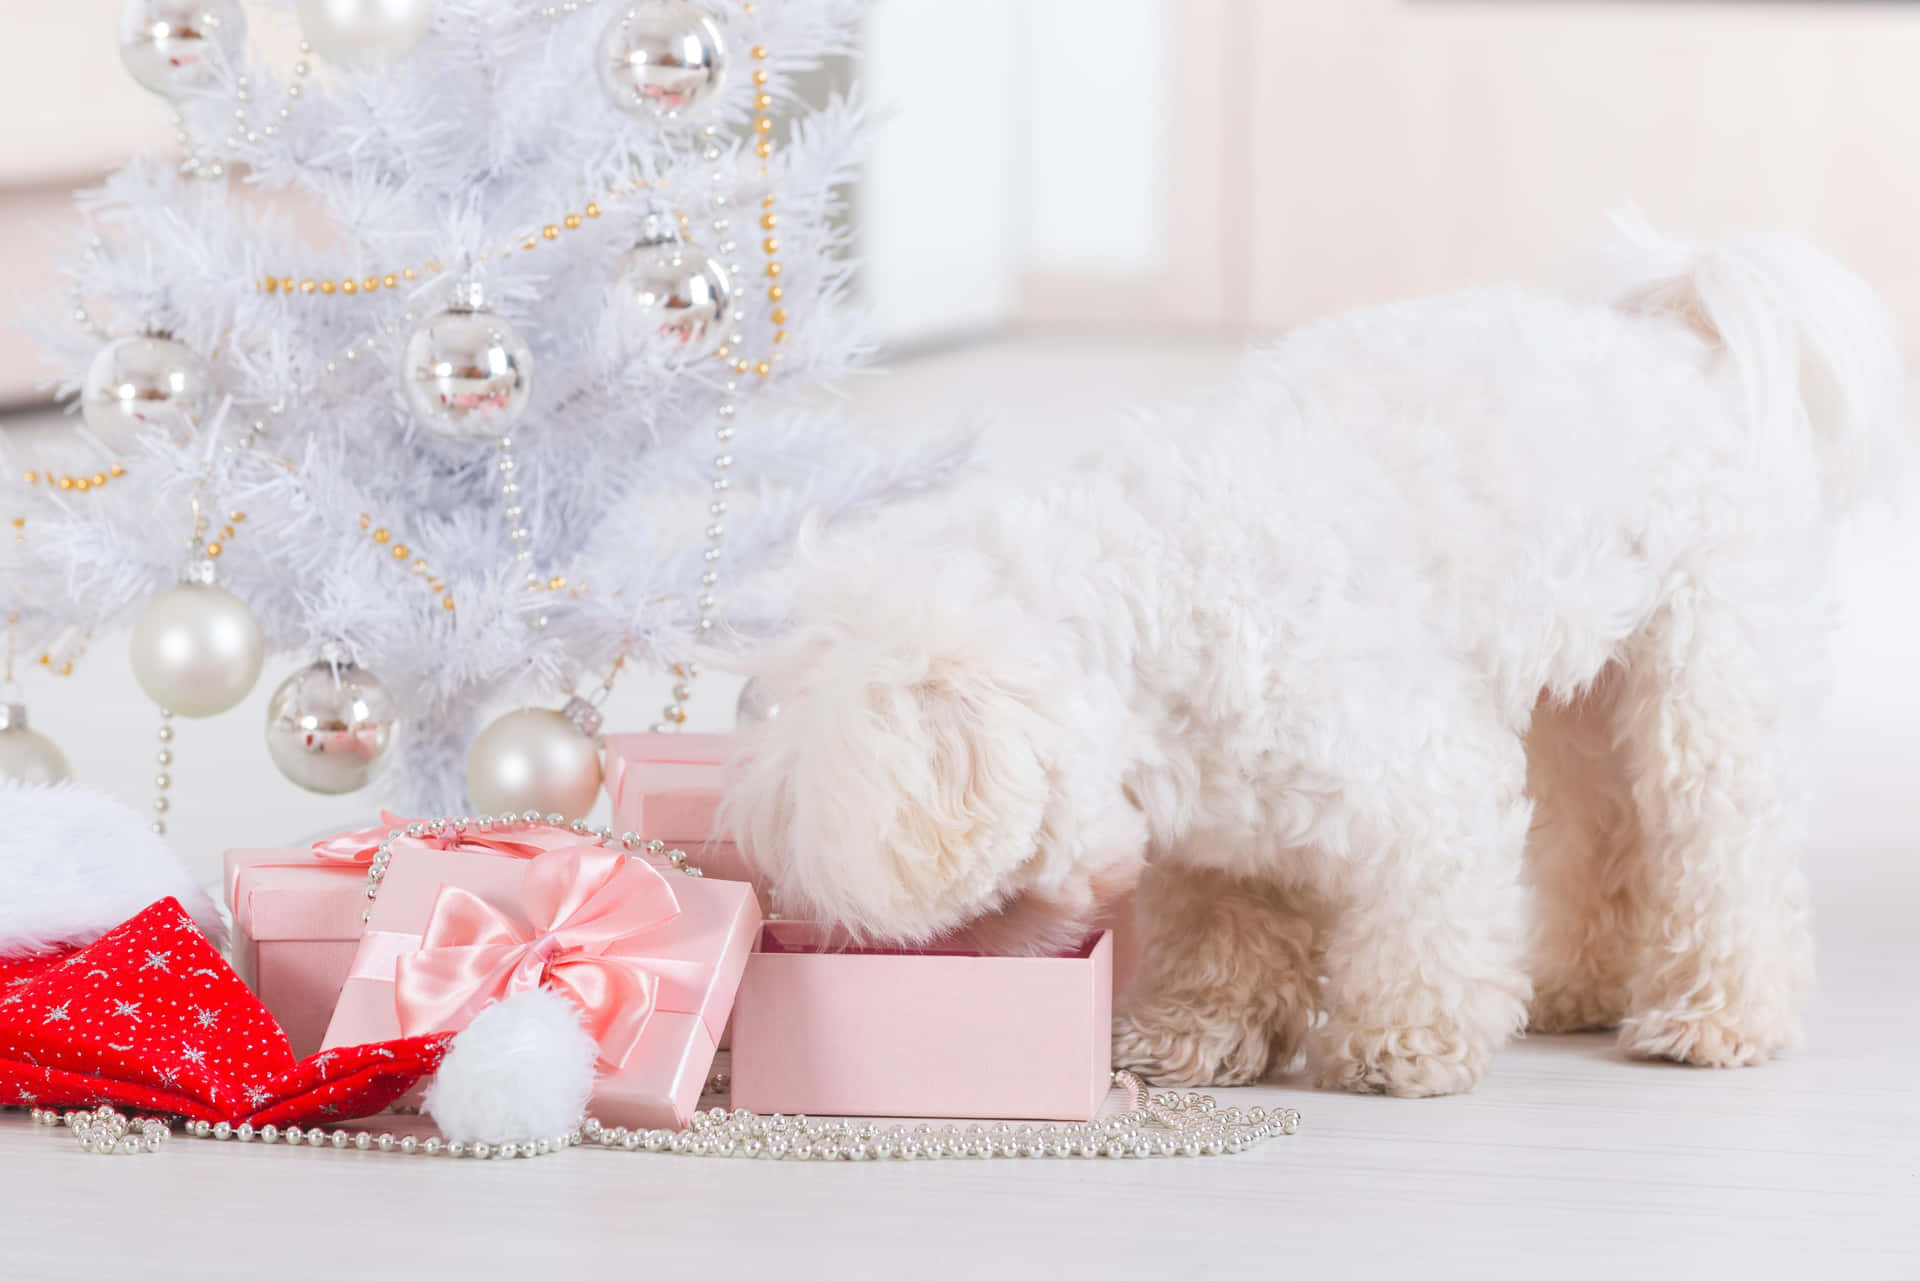 Imagende Un Perro Poodle De Navidad Abriendo Regalos.